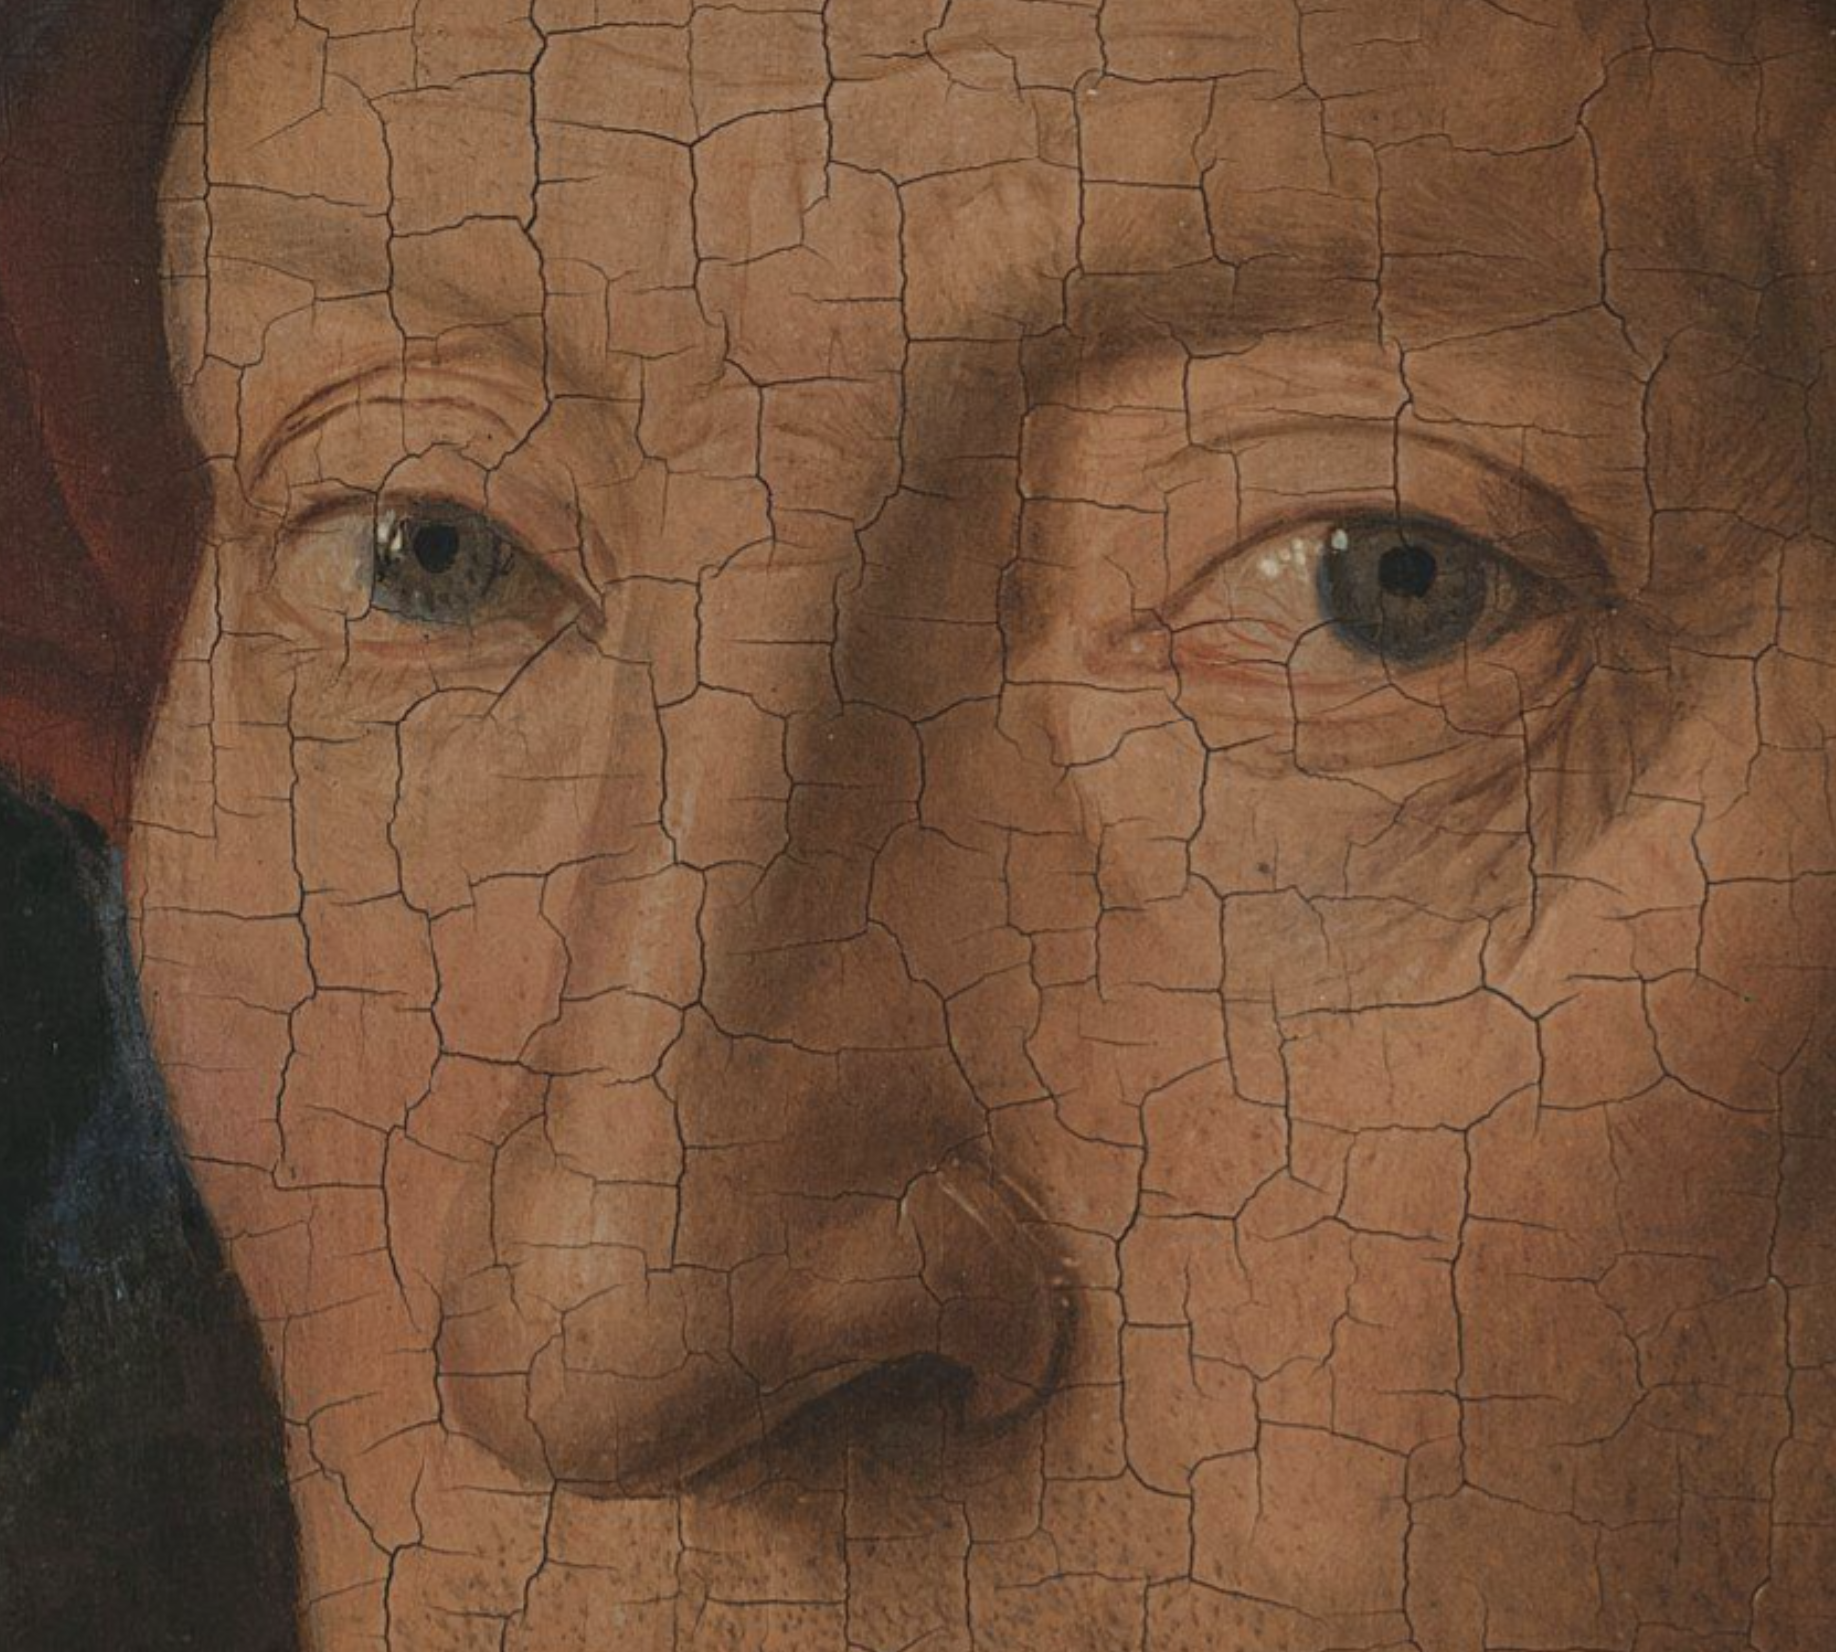 Detail, Jan van Eyck, The Man in the Red Turban (Self-Portrait?), oil on oak panel, 1433.